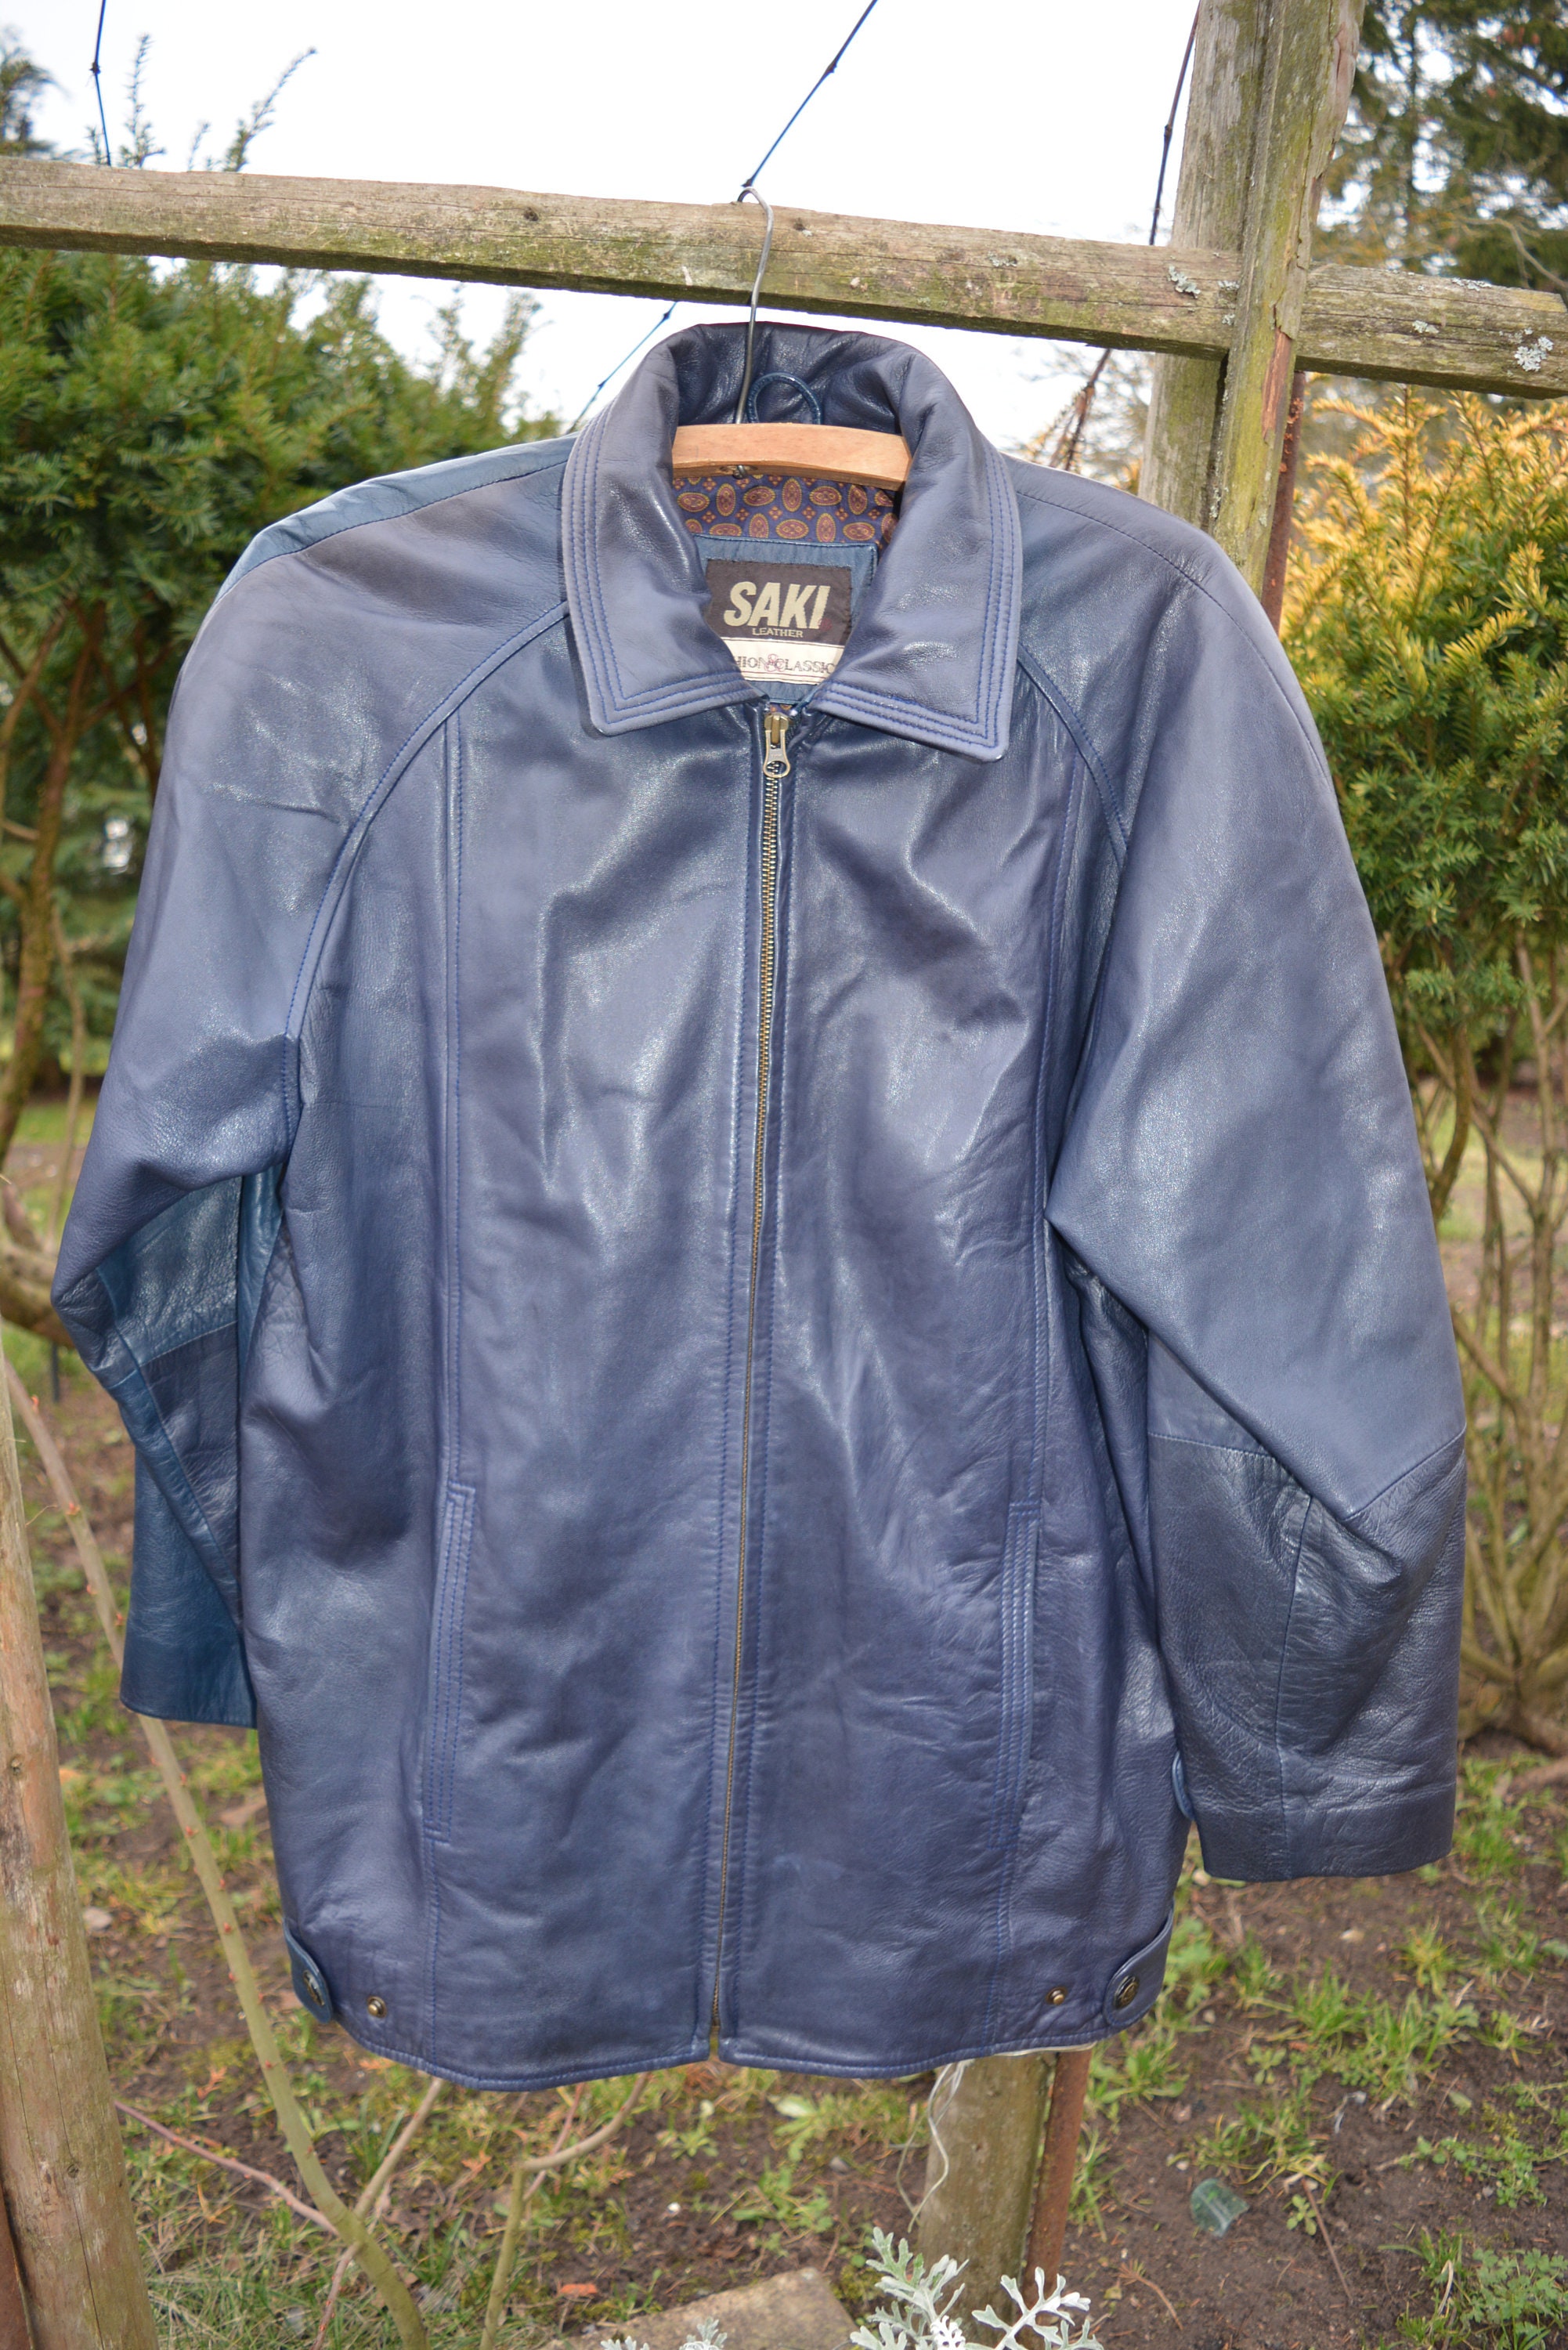 SAKI Leather Jacket for Women Size 38 BLUE Leather Jacket -